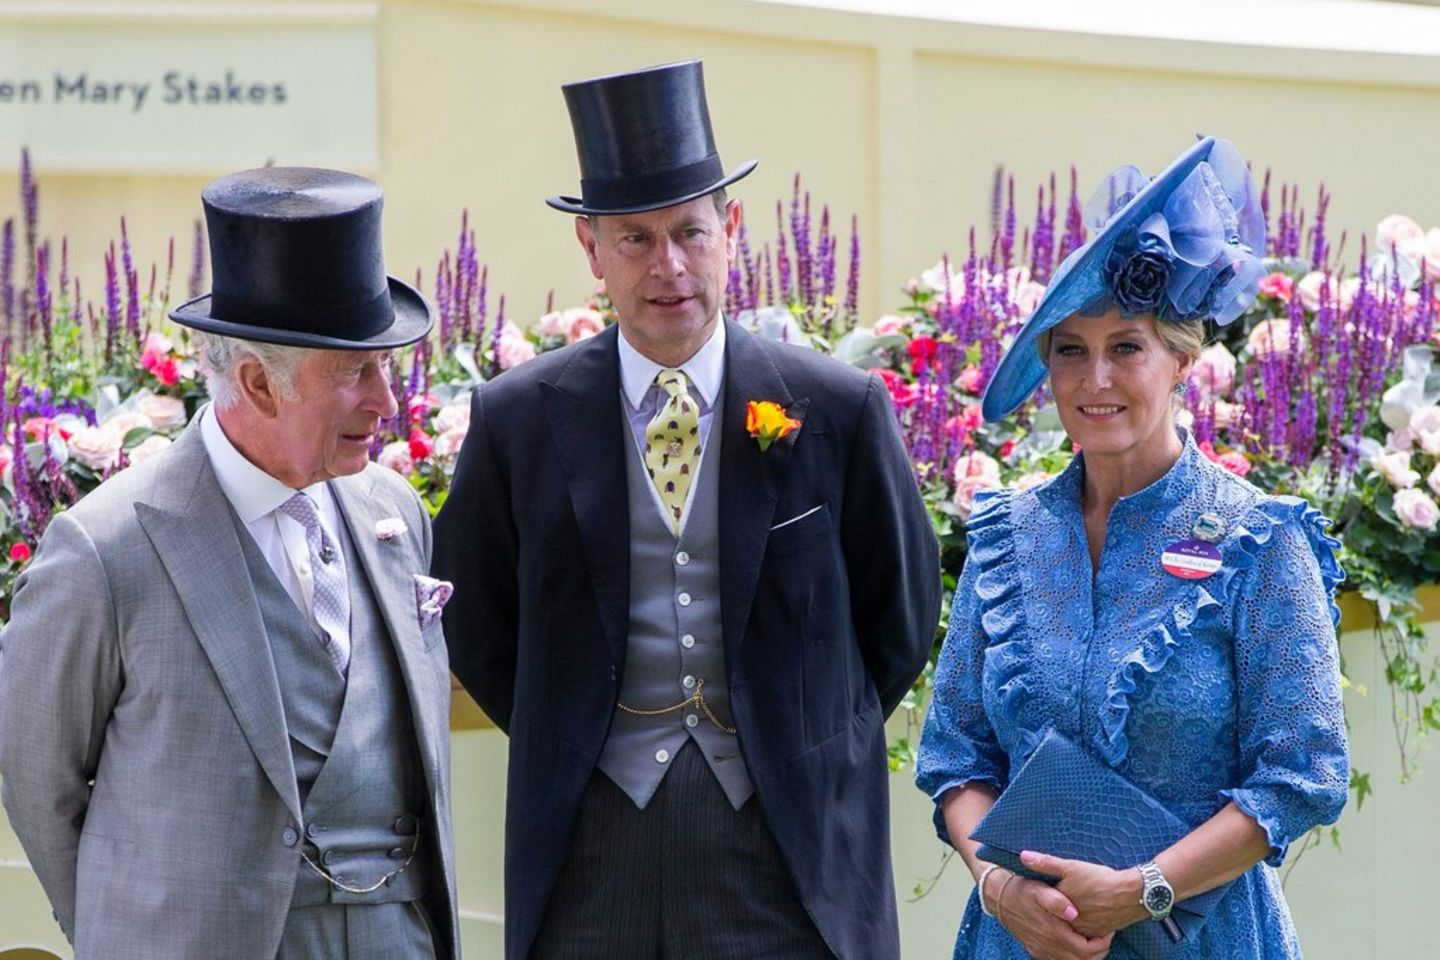 König Charles (l.), Prinz Edward und Herzogin Sophie in ihren Ascot-Outfits.